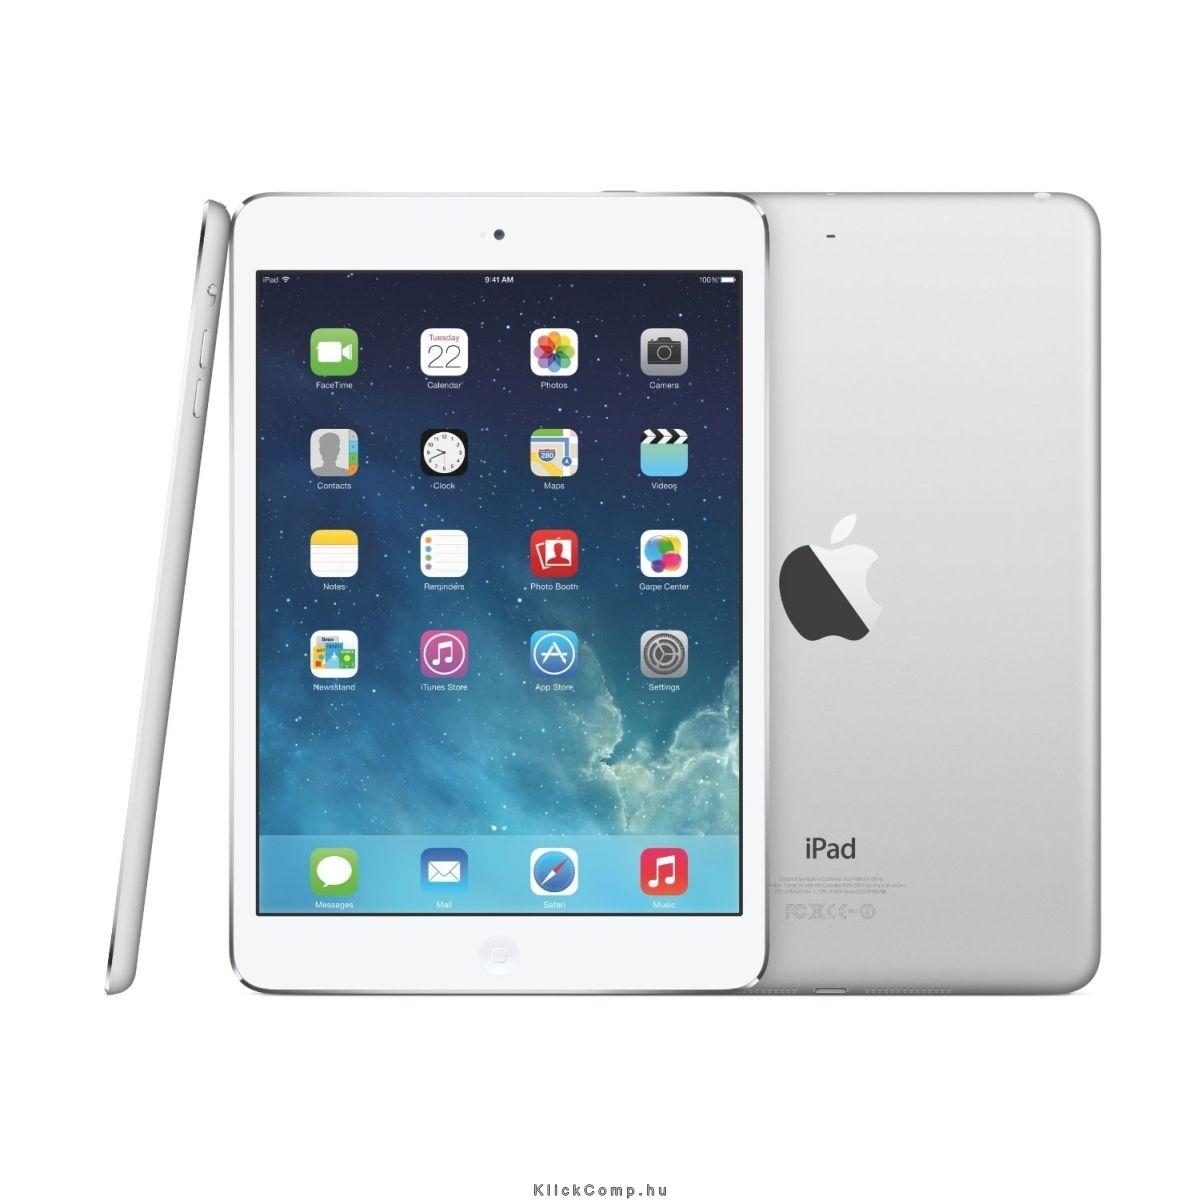 iPad Air 2 64 GB Wi-Fi ezüst fotó, illusztráció : MGKM2